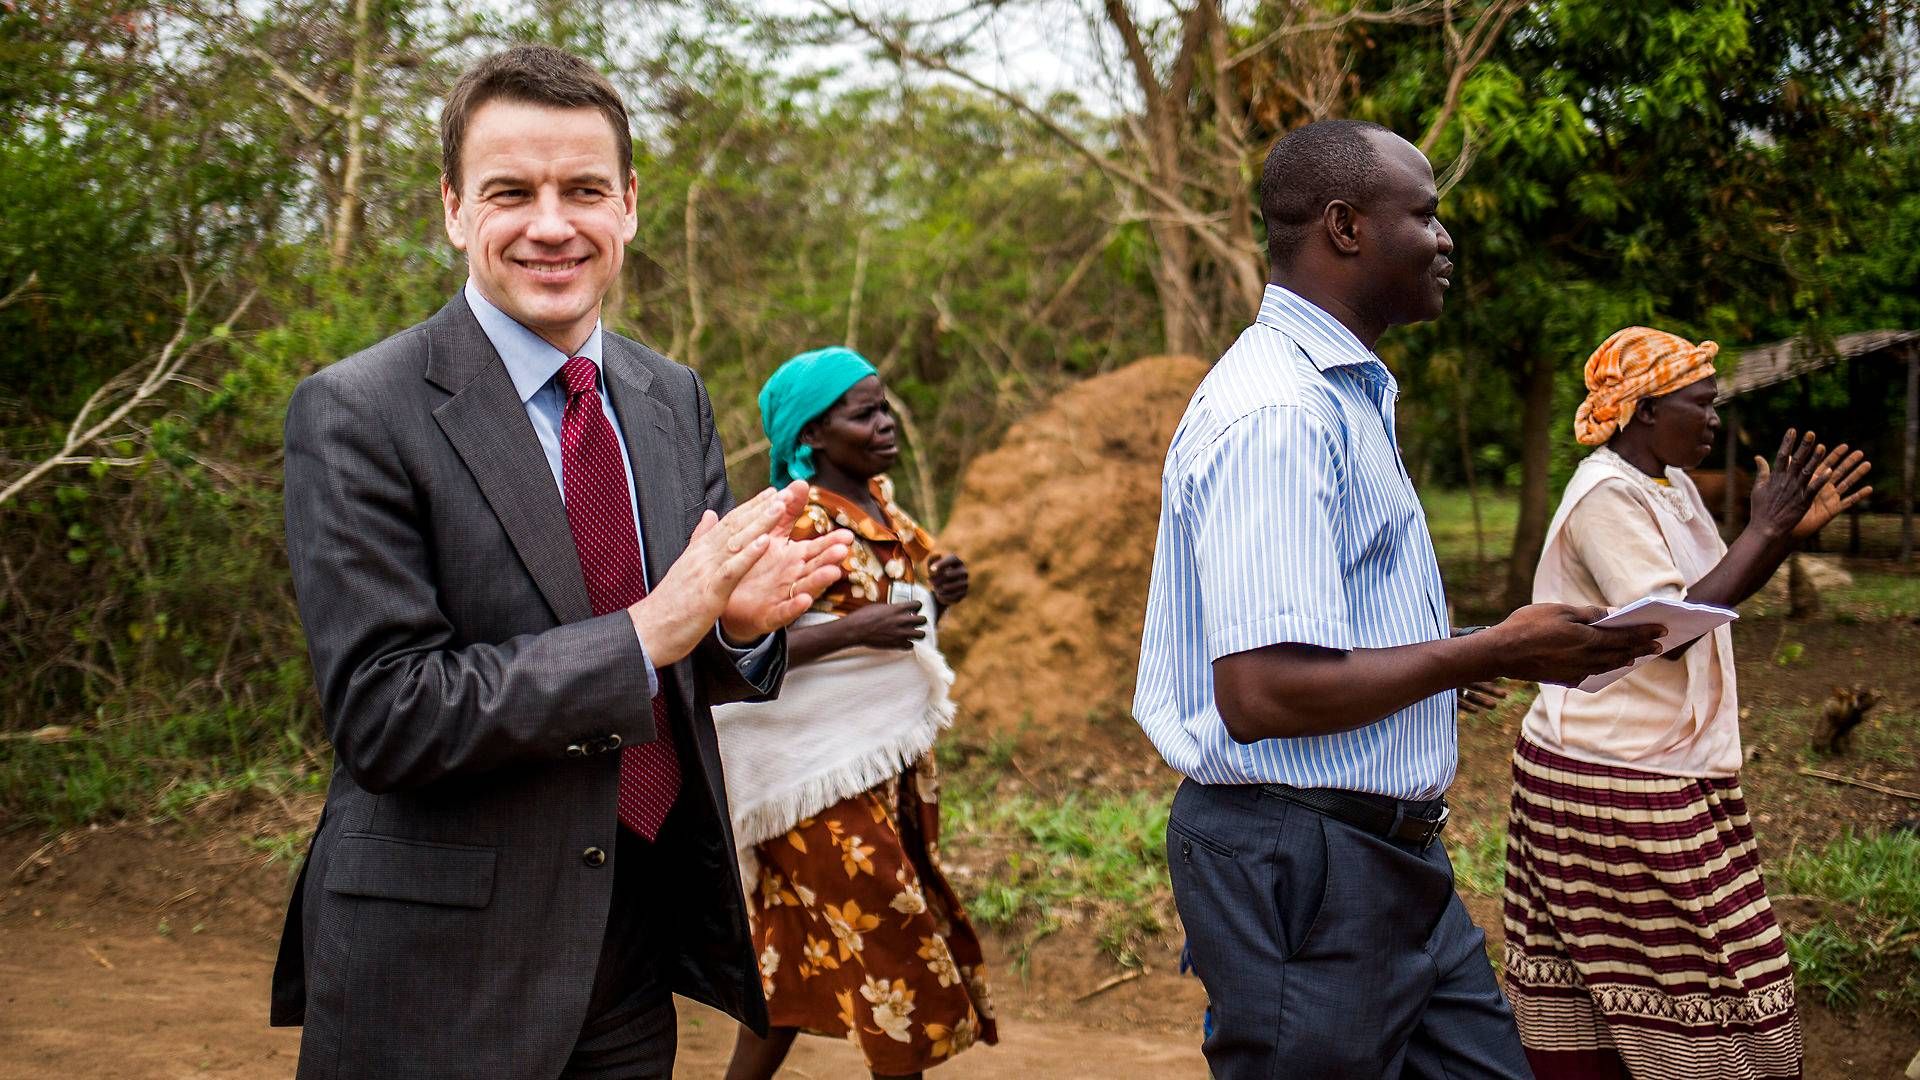 Magasinet 360 har dækket den danske udviklingsindsats i 47 år. Bl.a. da udviklingminister Christian Friis Bach var på besøg i Uganda i 2013. | Foto: Simon Fals/Politiken/Ritzau Scanpix